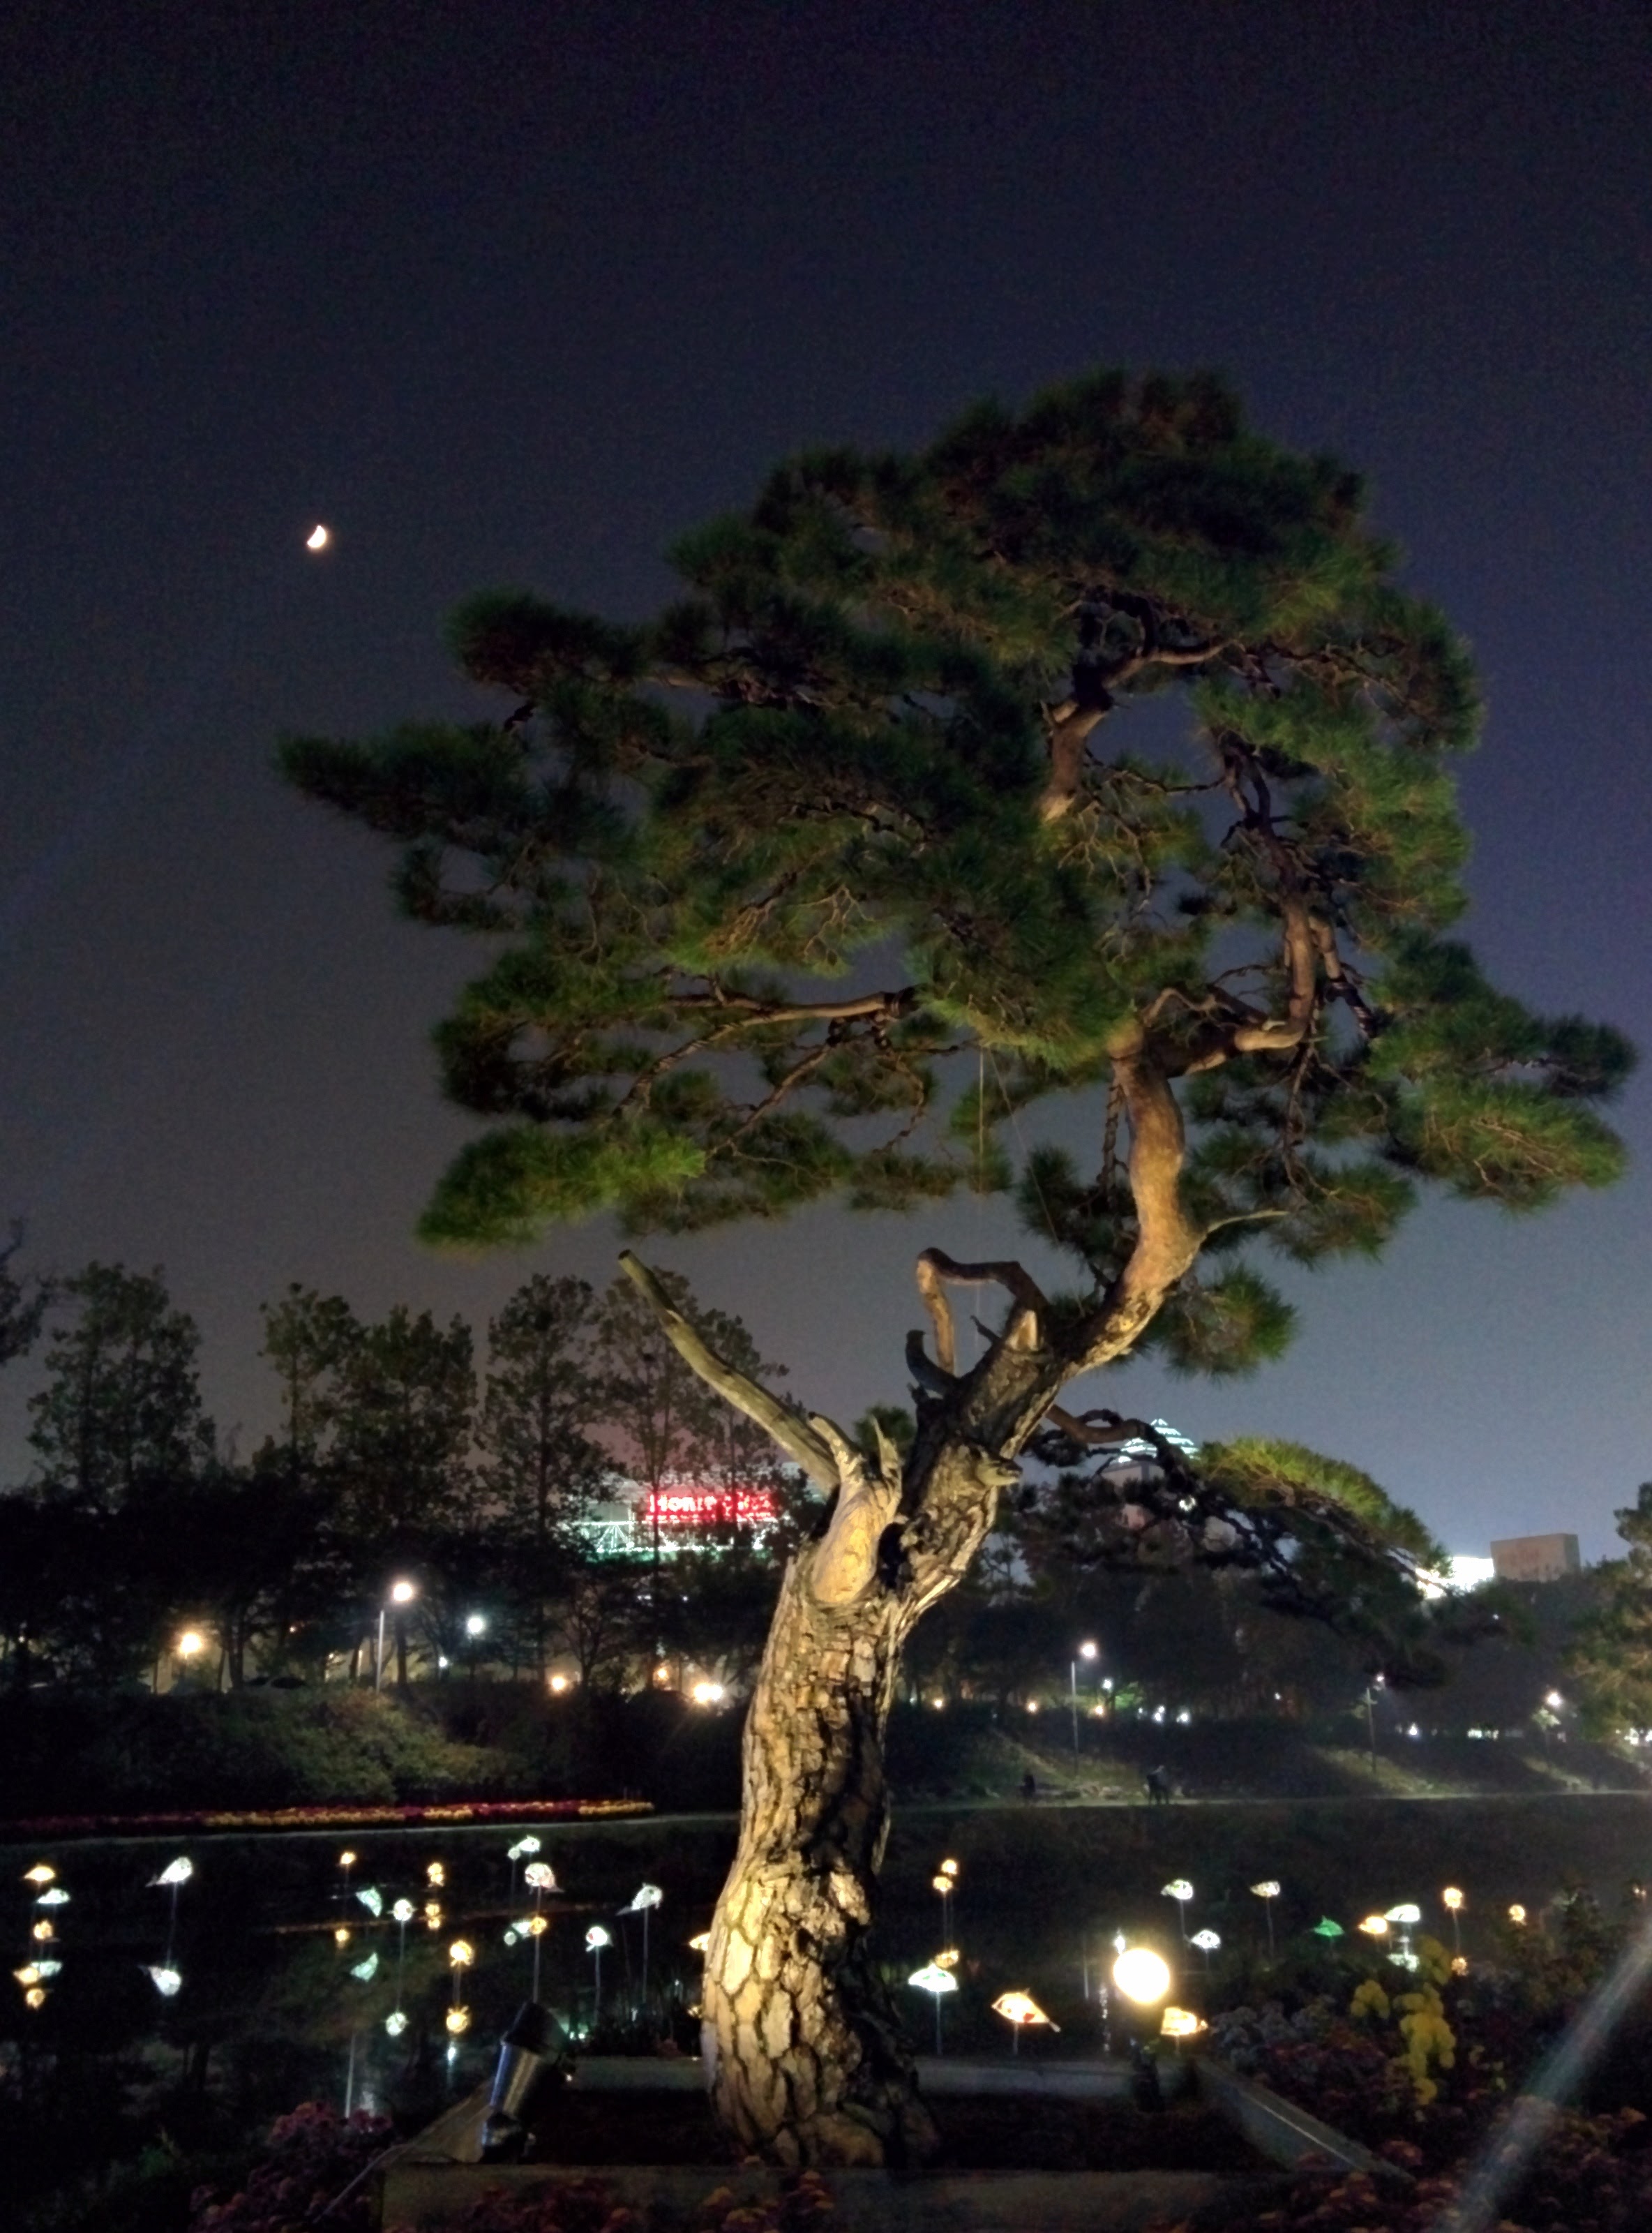 IMG_20151020_191854.jpg 유성국화전시회 야경, 달과 소나무